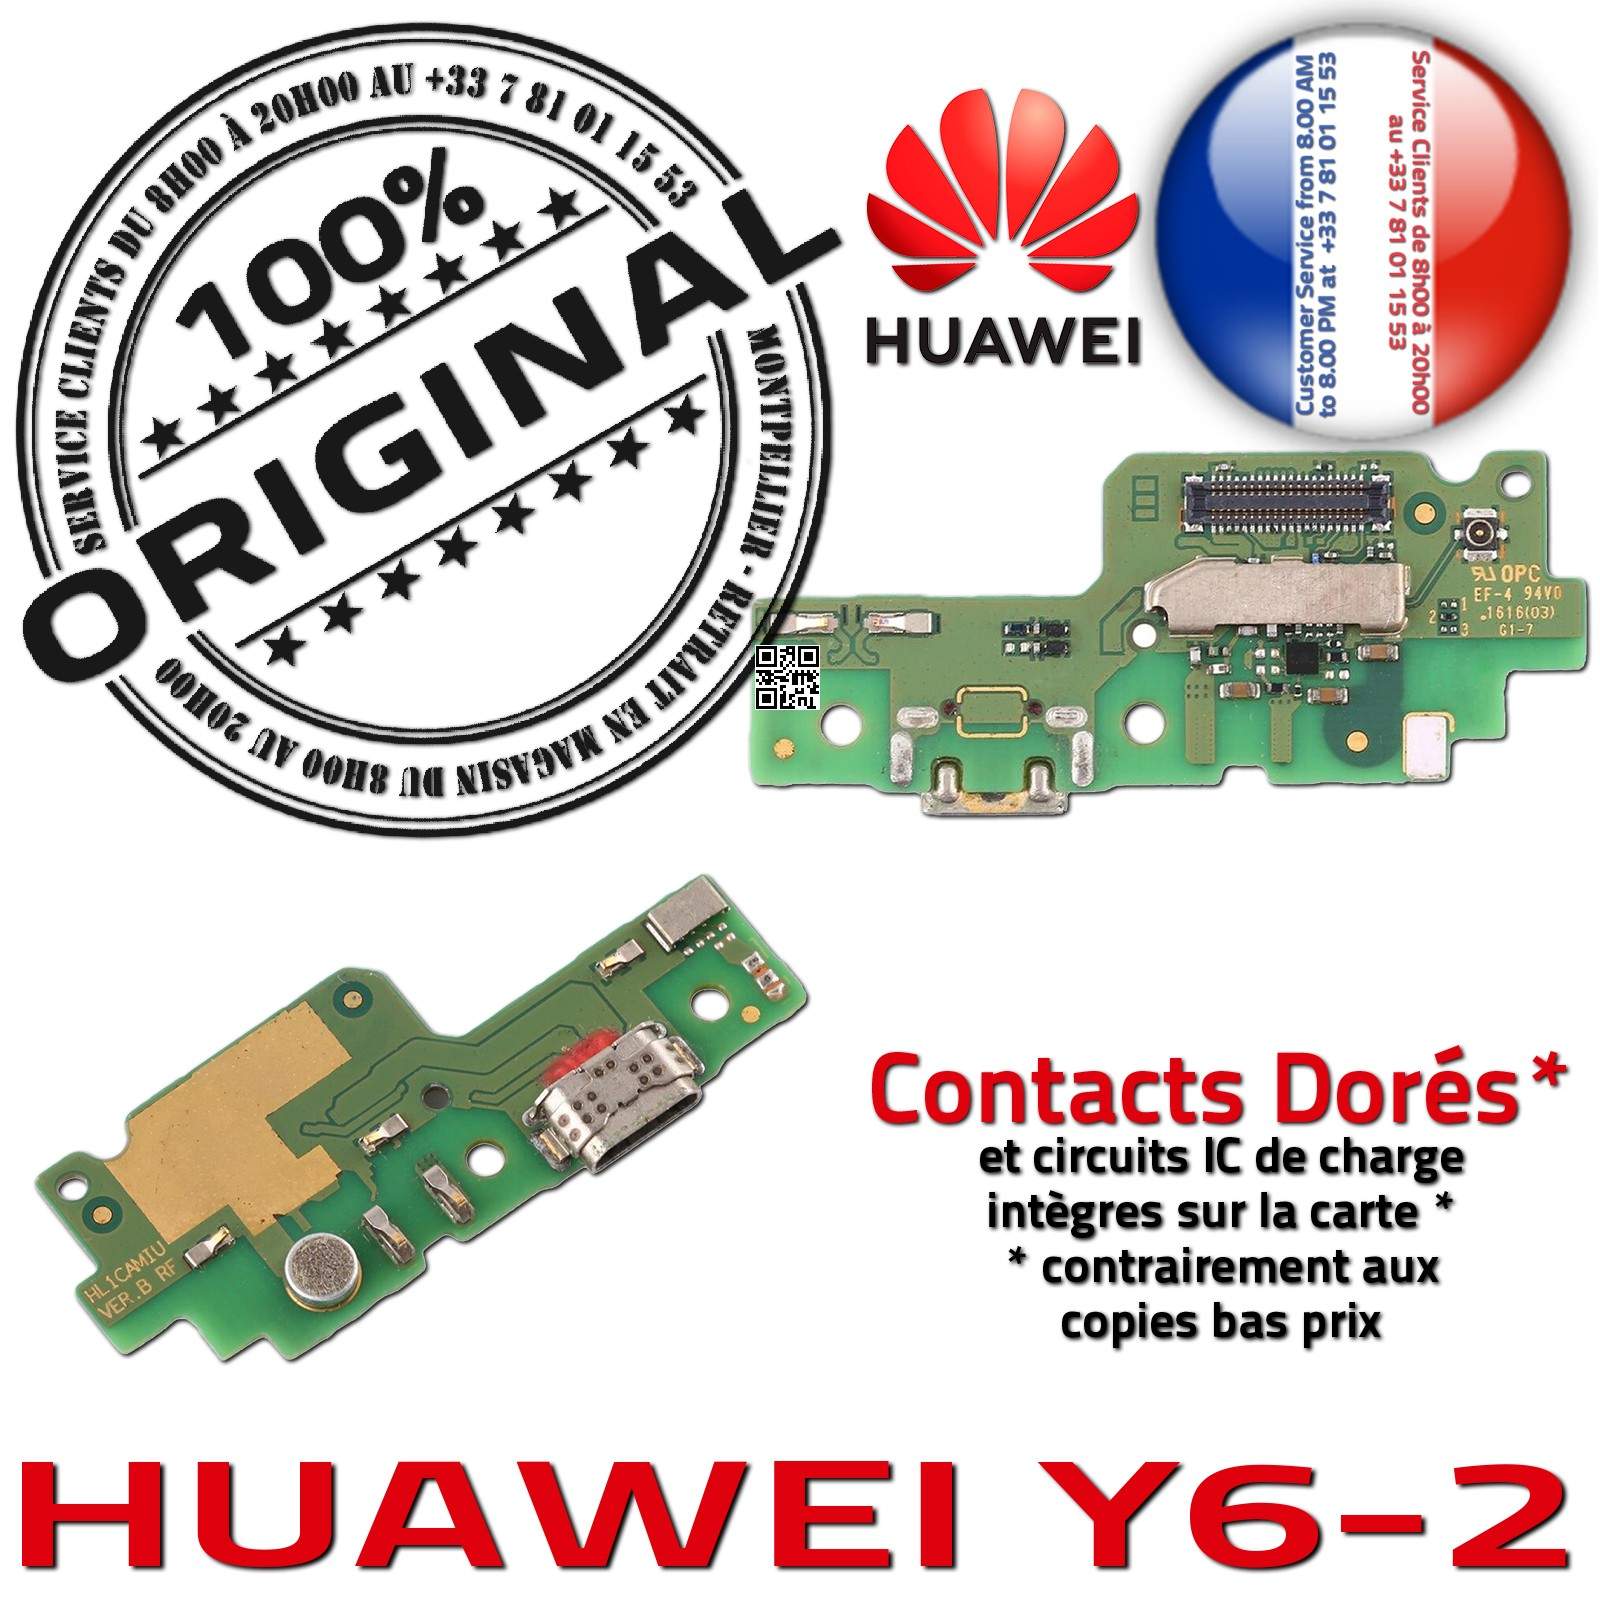 Huawei Y6-2 Charge Rapide Connecteur Micro USB ORIGINAL Prise Chargeur Nappe OFFICIELLE Qualité Microphone Antenne RESEAU Câble